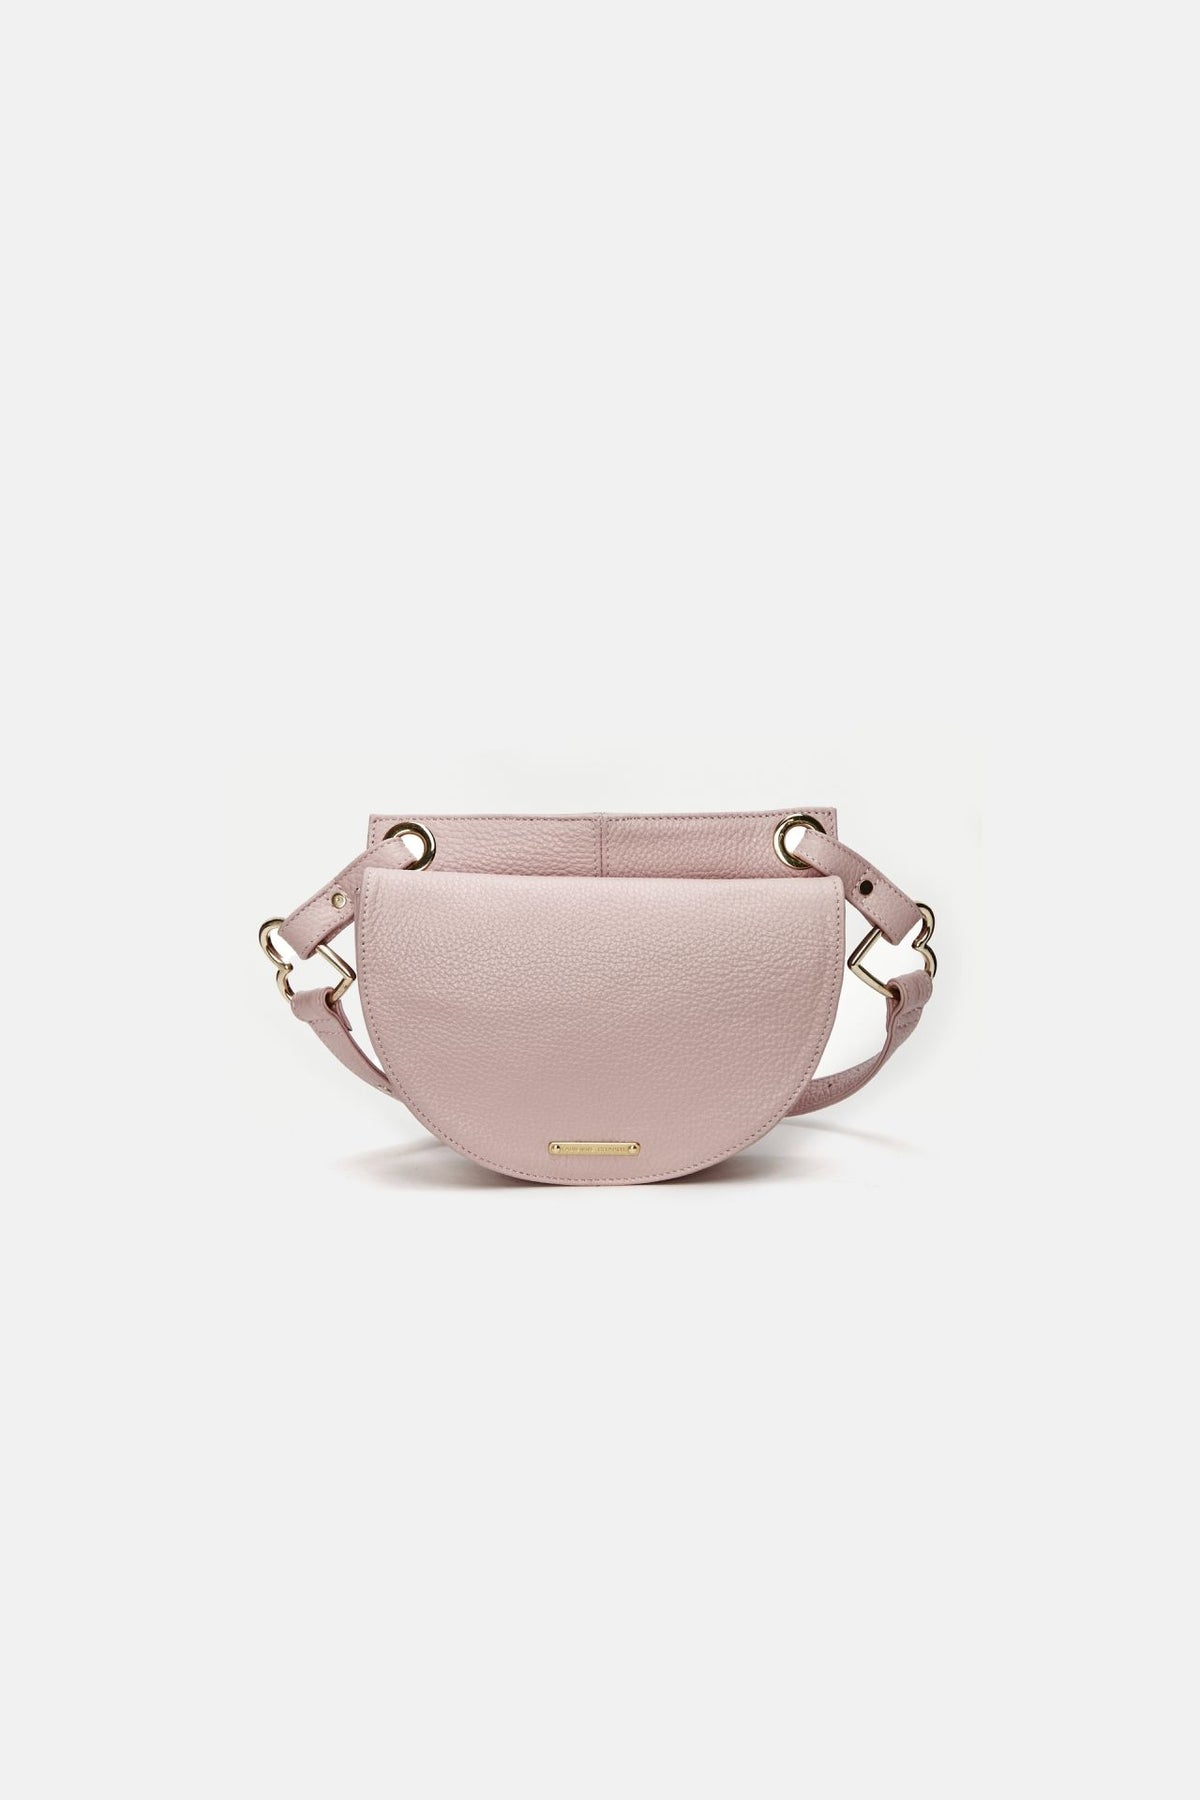 Fabienne Chapot Lilian Bag in Trippy Pink | Fabienne Chapot Bags ...